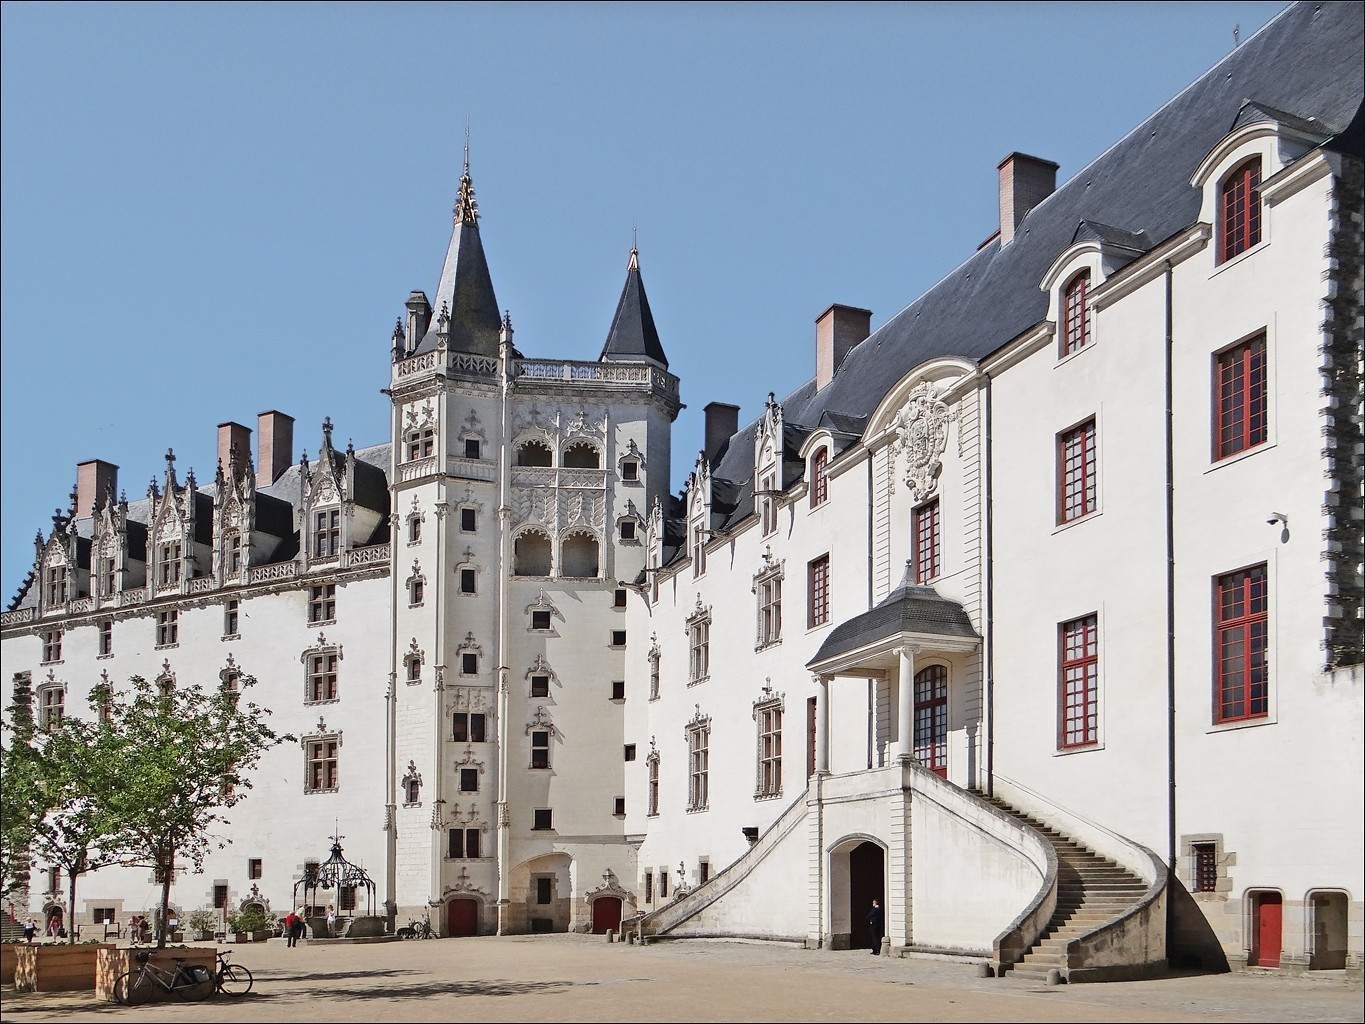 La cour intérieure du château des ducs de Bretagne est dominé par un château de type Renaissance dominé faite de pierre blanche.